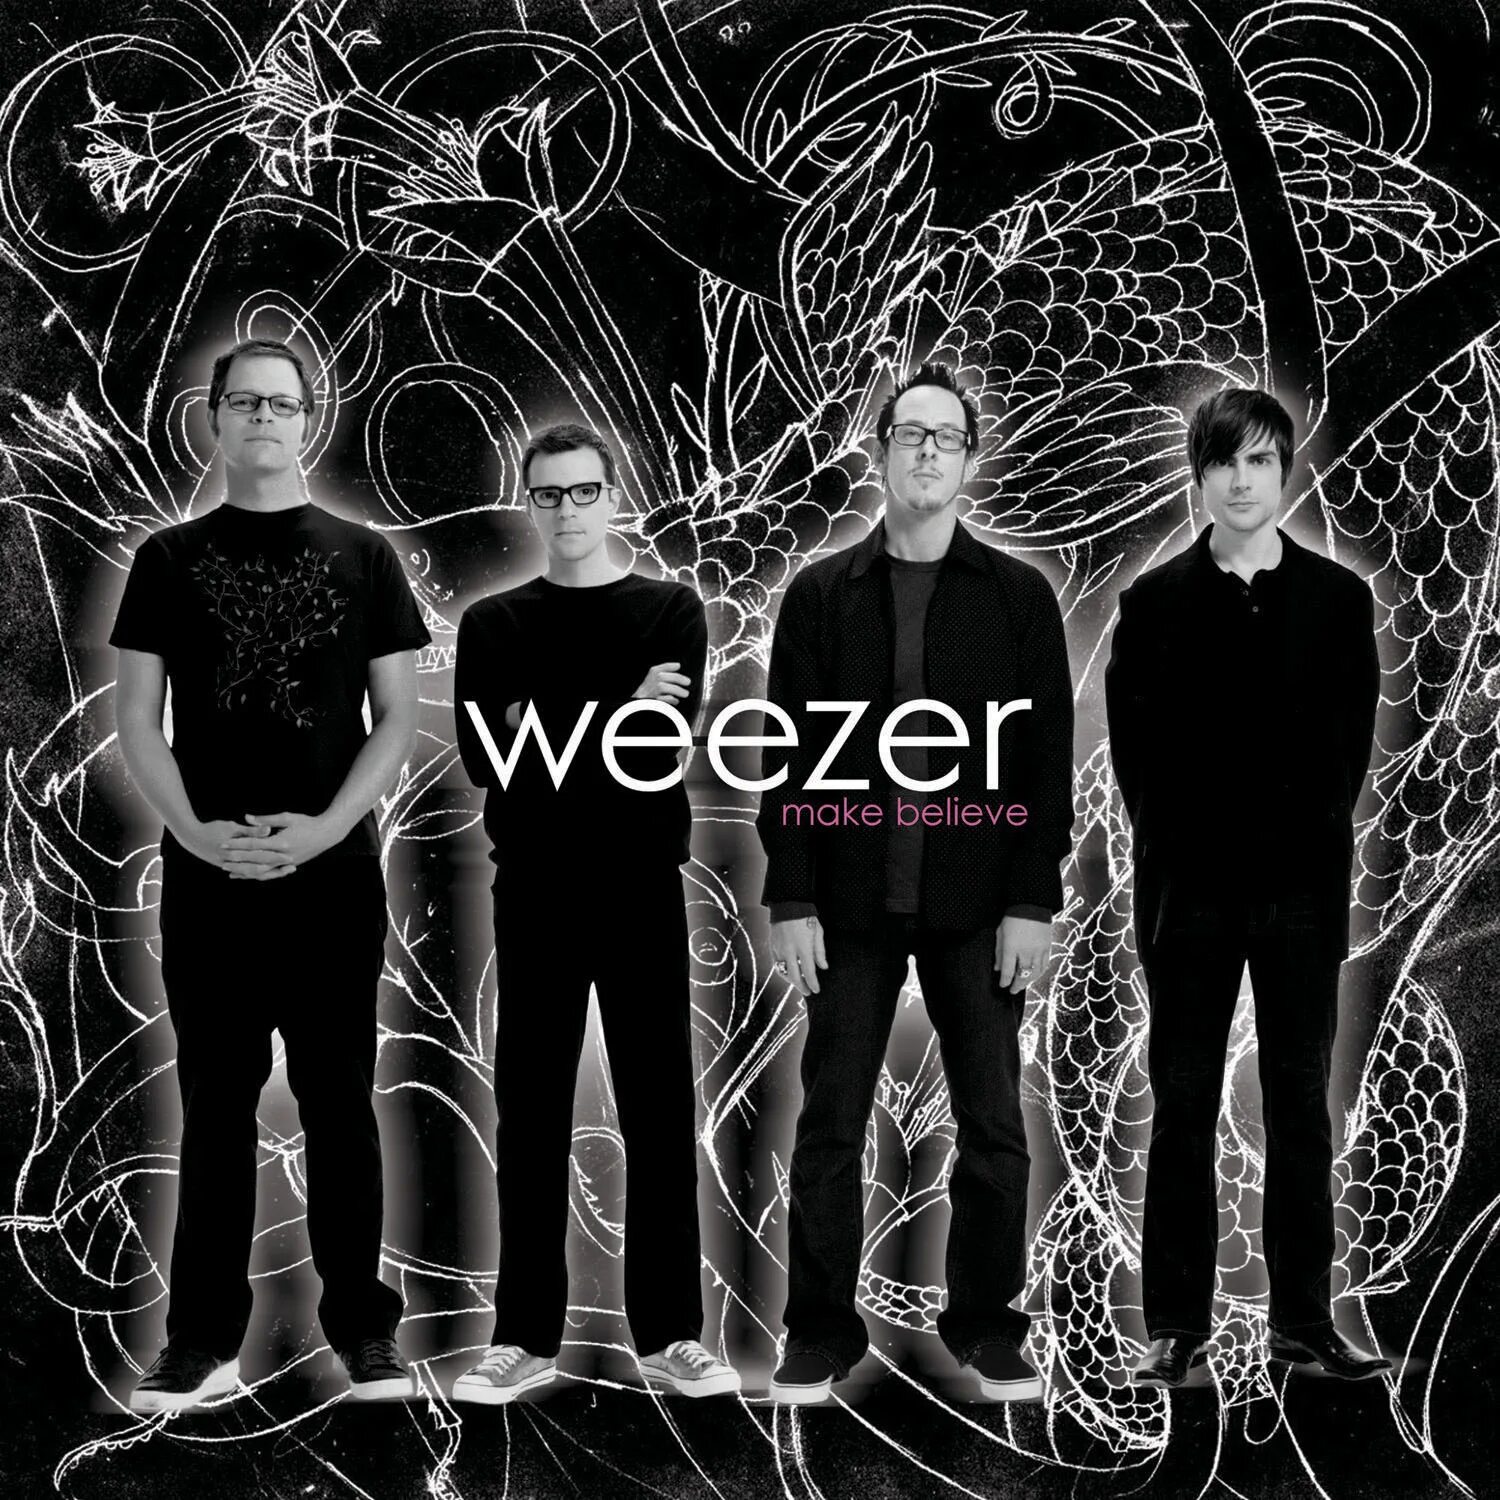 Make believe Weezer. Weezer группа обложка. Визер группа. Weezer make believe обложка. Believe do make